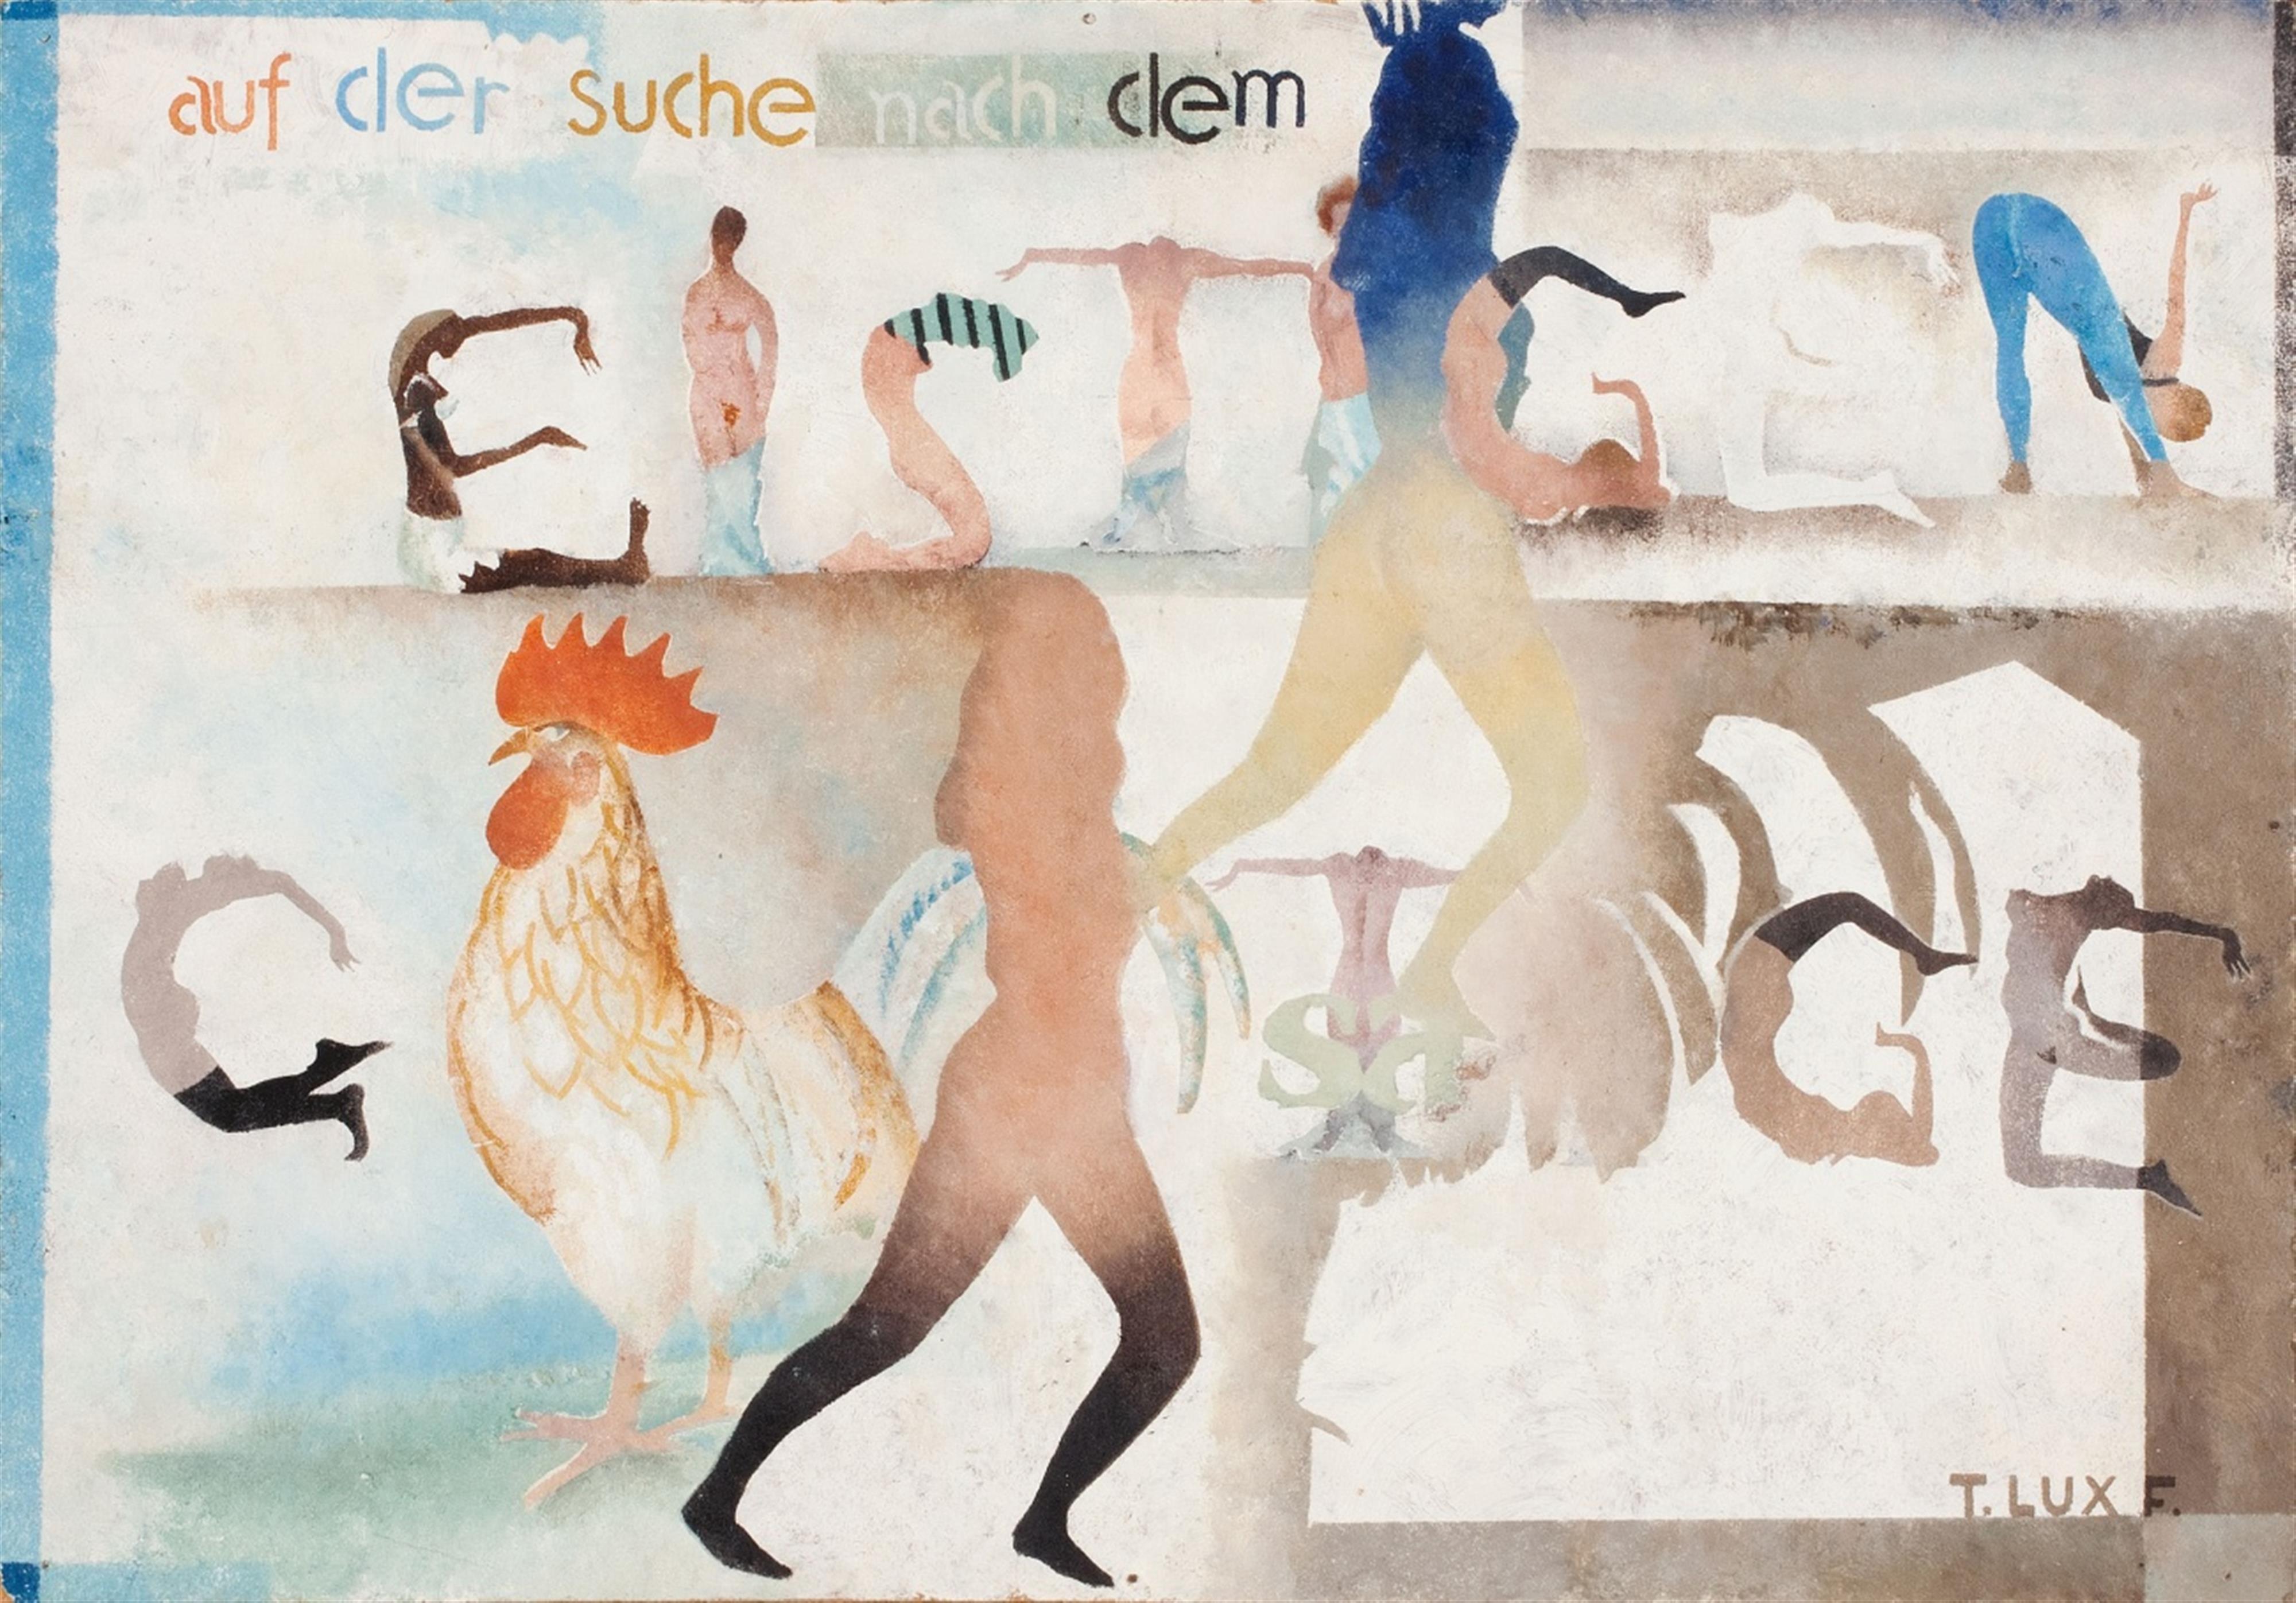 T. Lux Feininger - Auf dem Suche nach dem Geistigen (Searching the Spiritual) - image-1